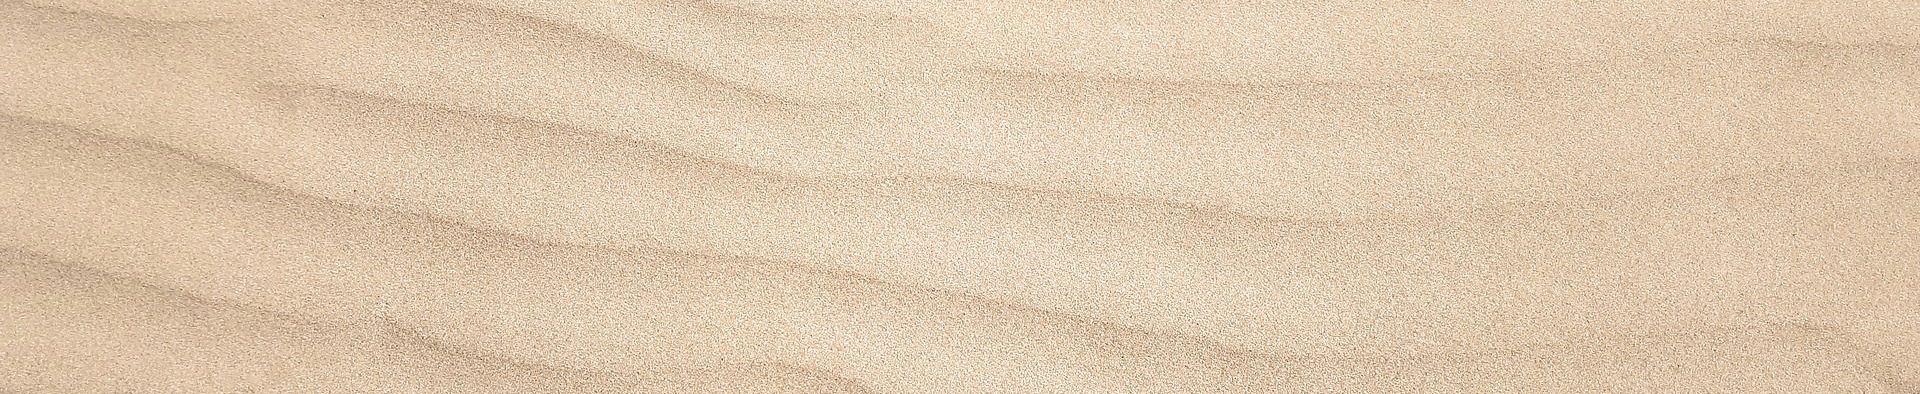 sabbia-spiaggia